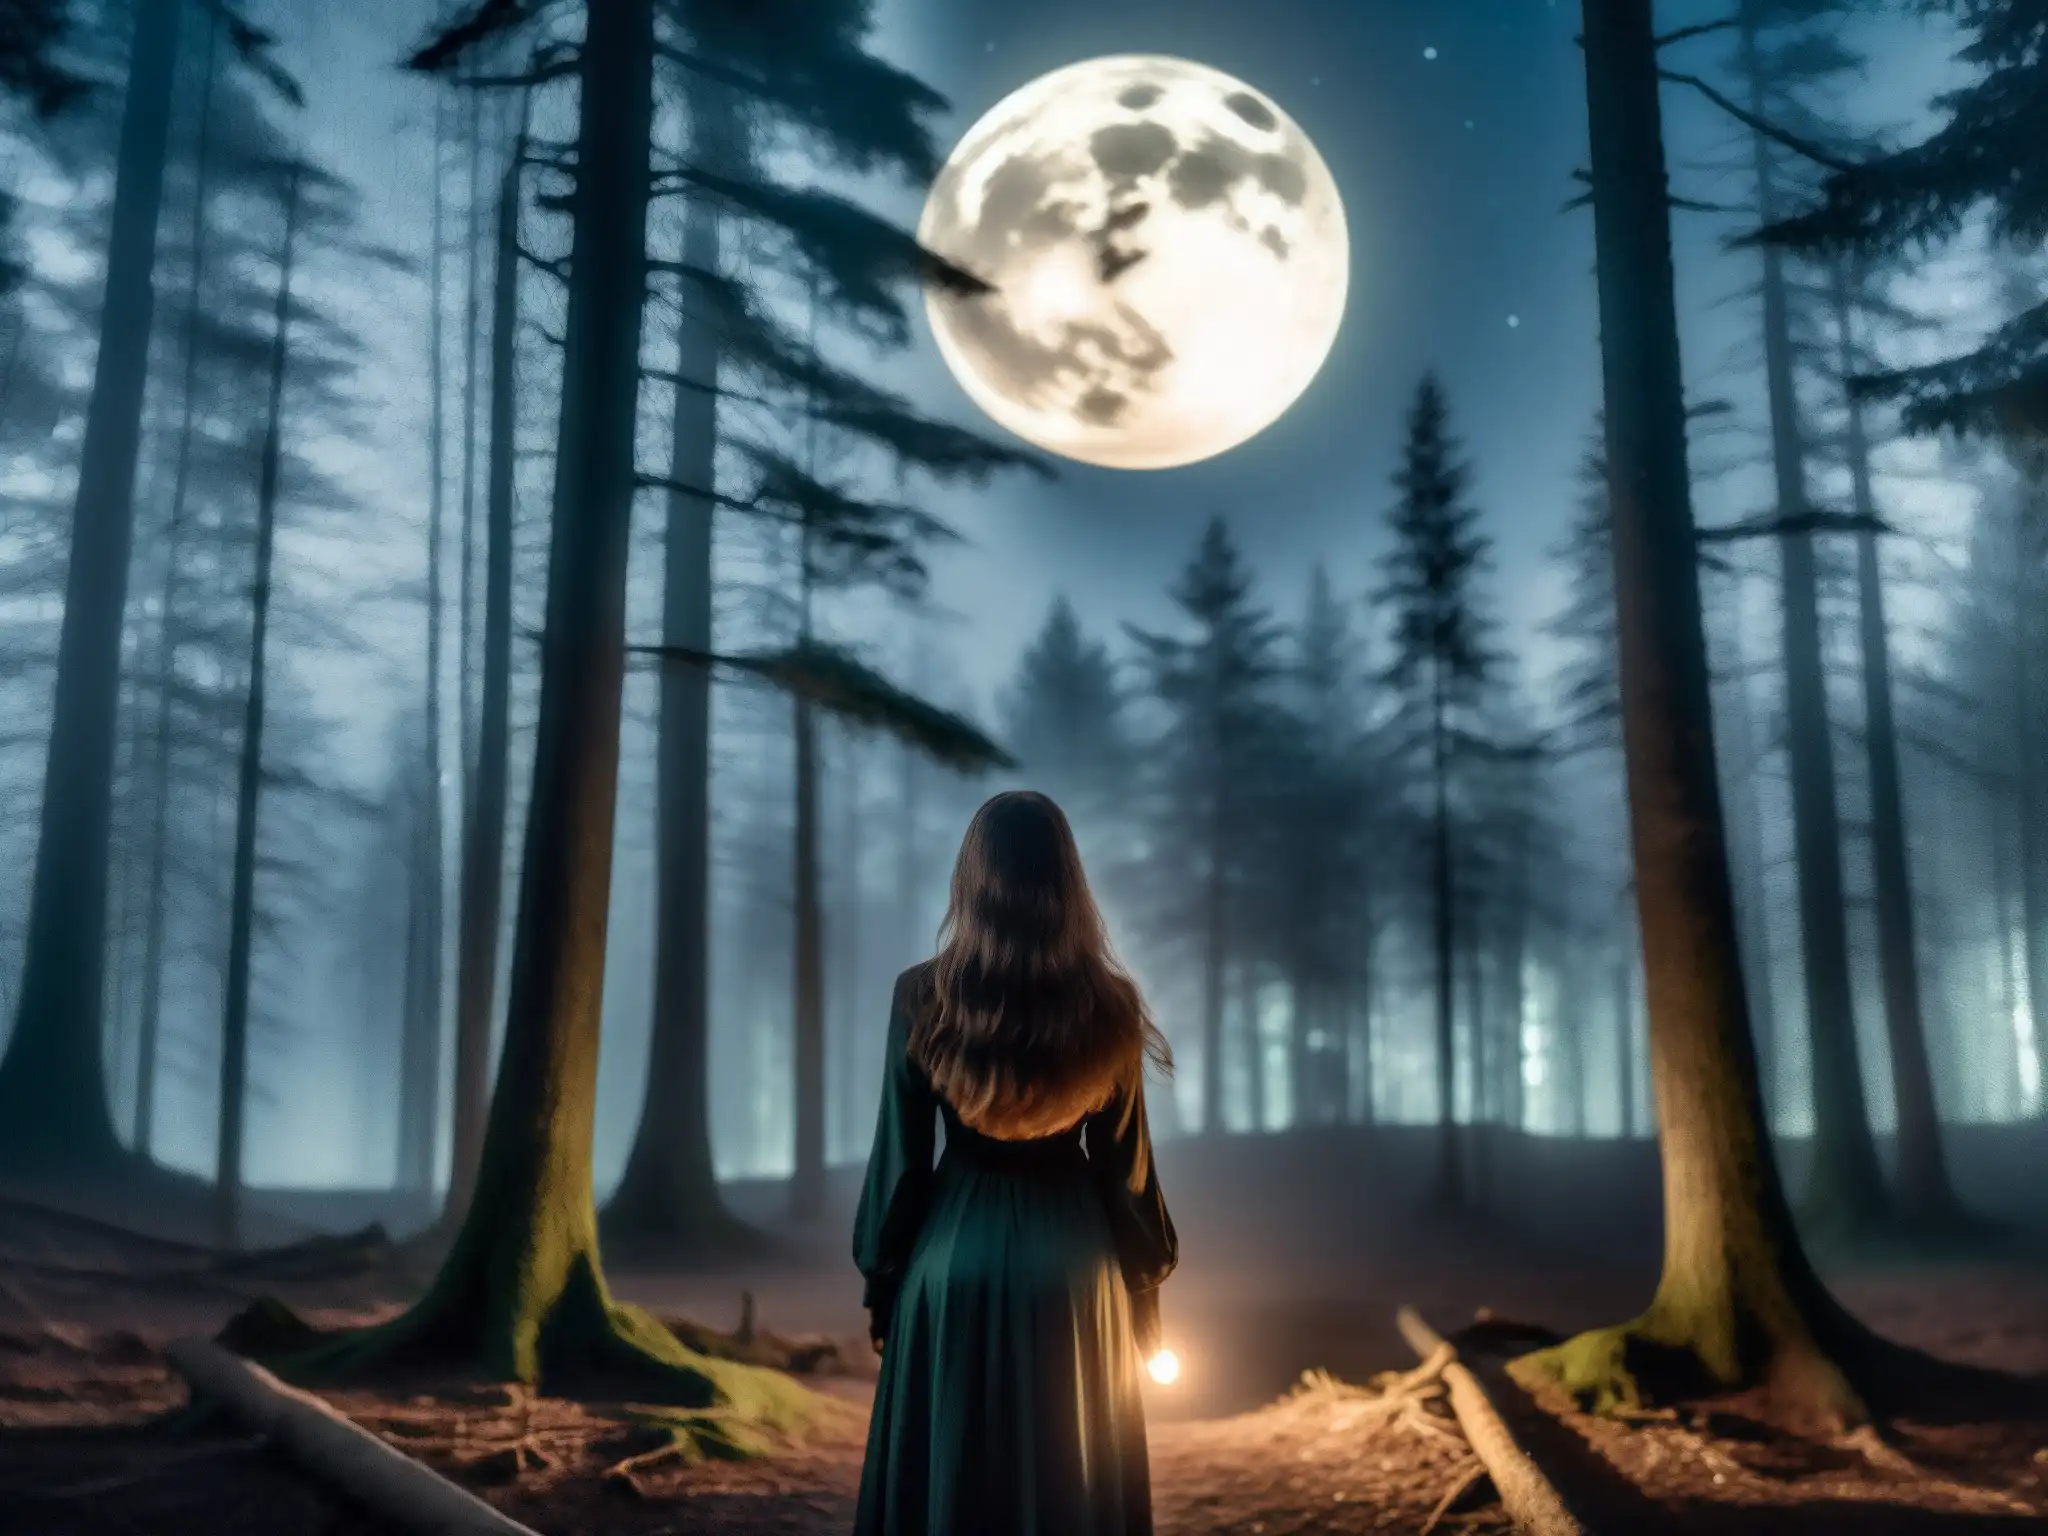 En un bosque oscuro y neblinoso de noche, una figura femenina con largos cabellos flotantes se perfila en primer plano, su rostro oculto